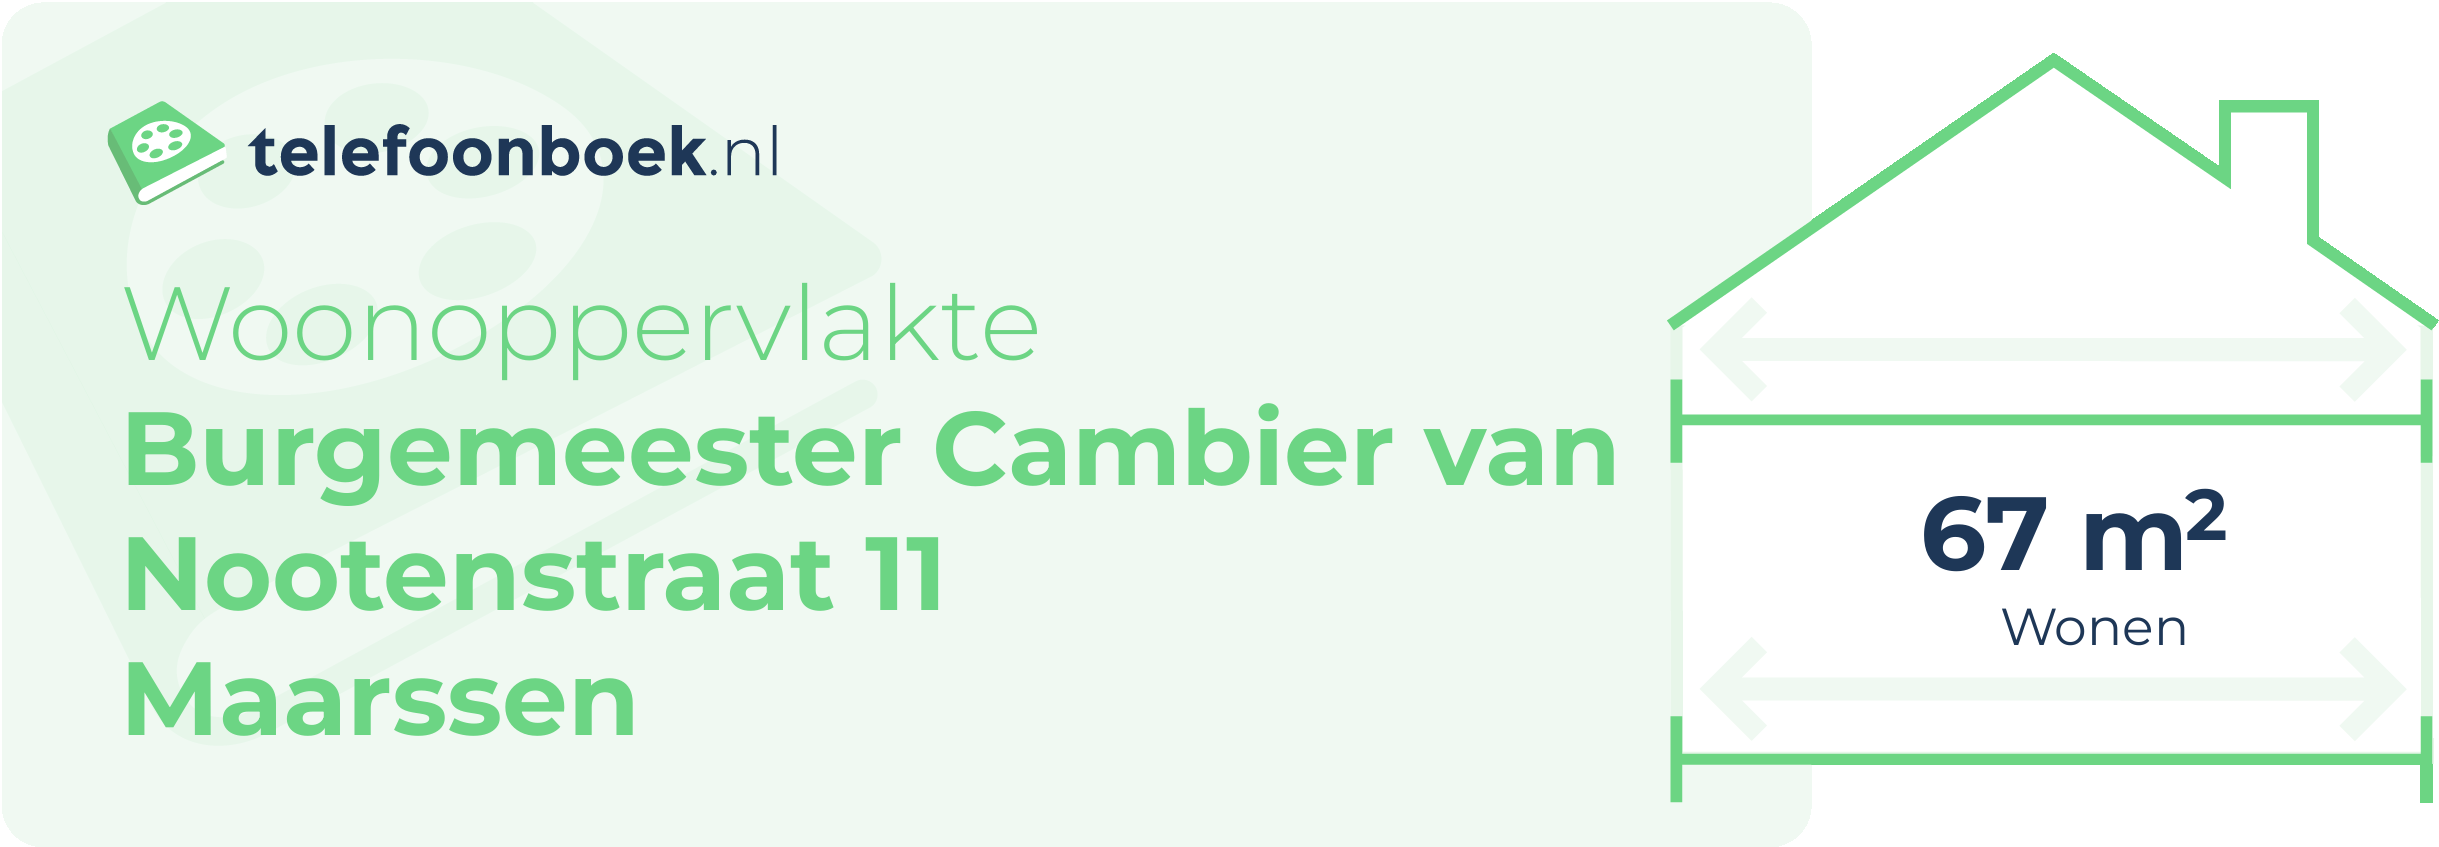 Woonoppervlakte Burgemeester Cambier Van Nootenstraat 11 Maarssen